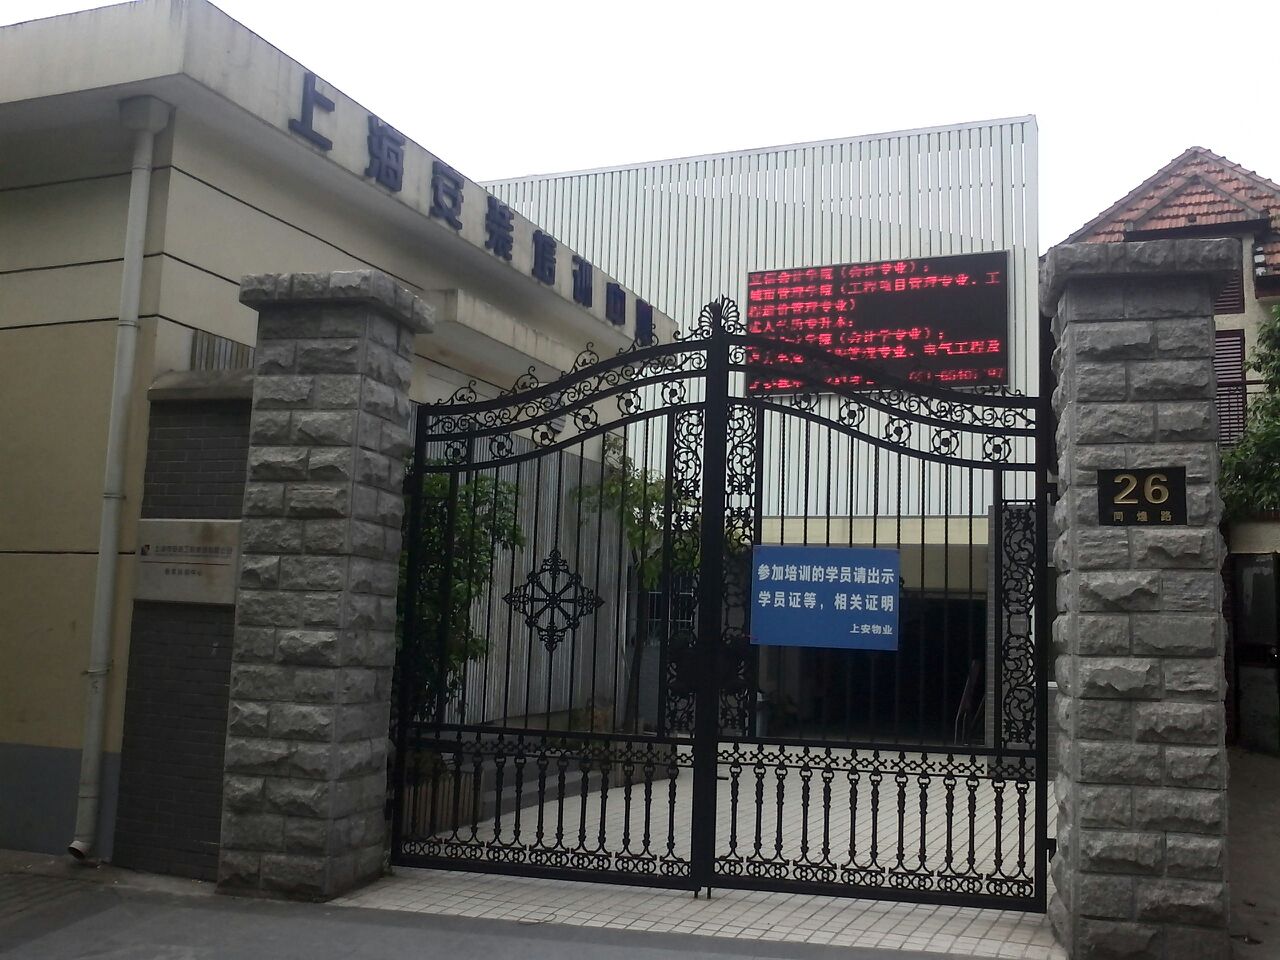 上海帘安装培训中心(同煌路)